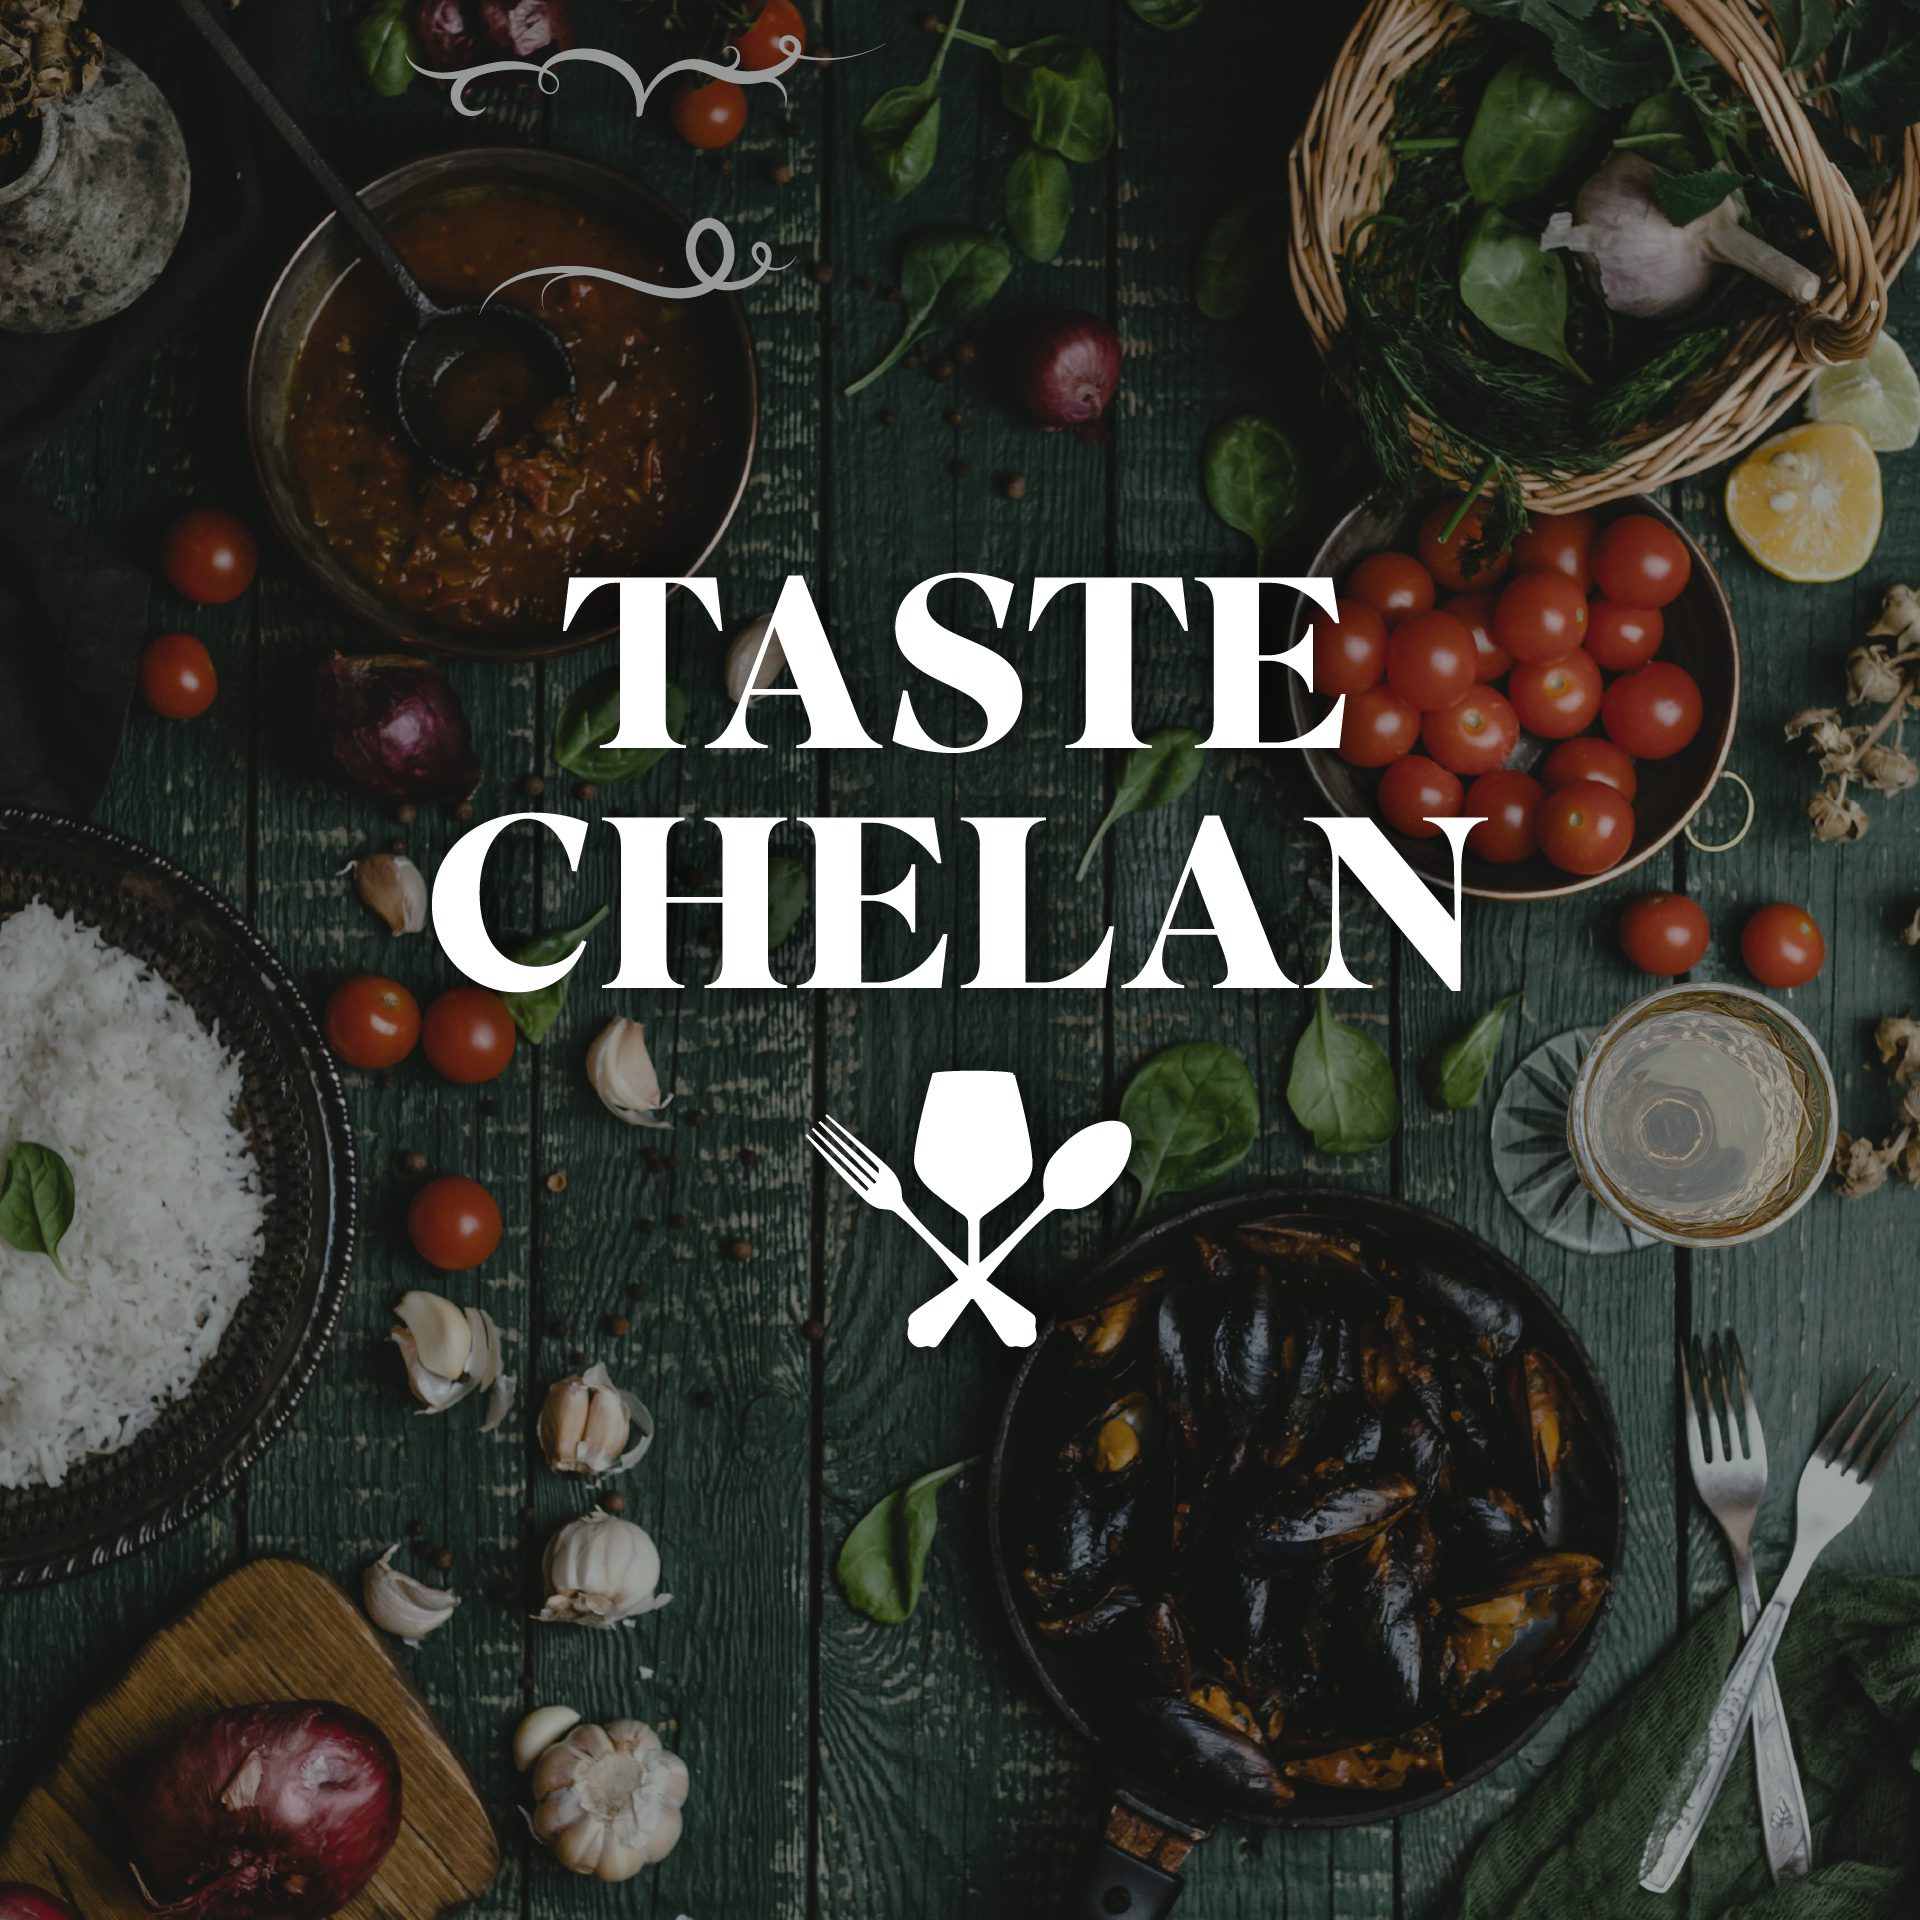 Taste Chelan